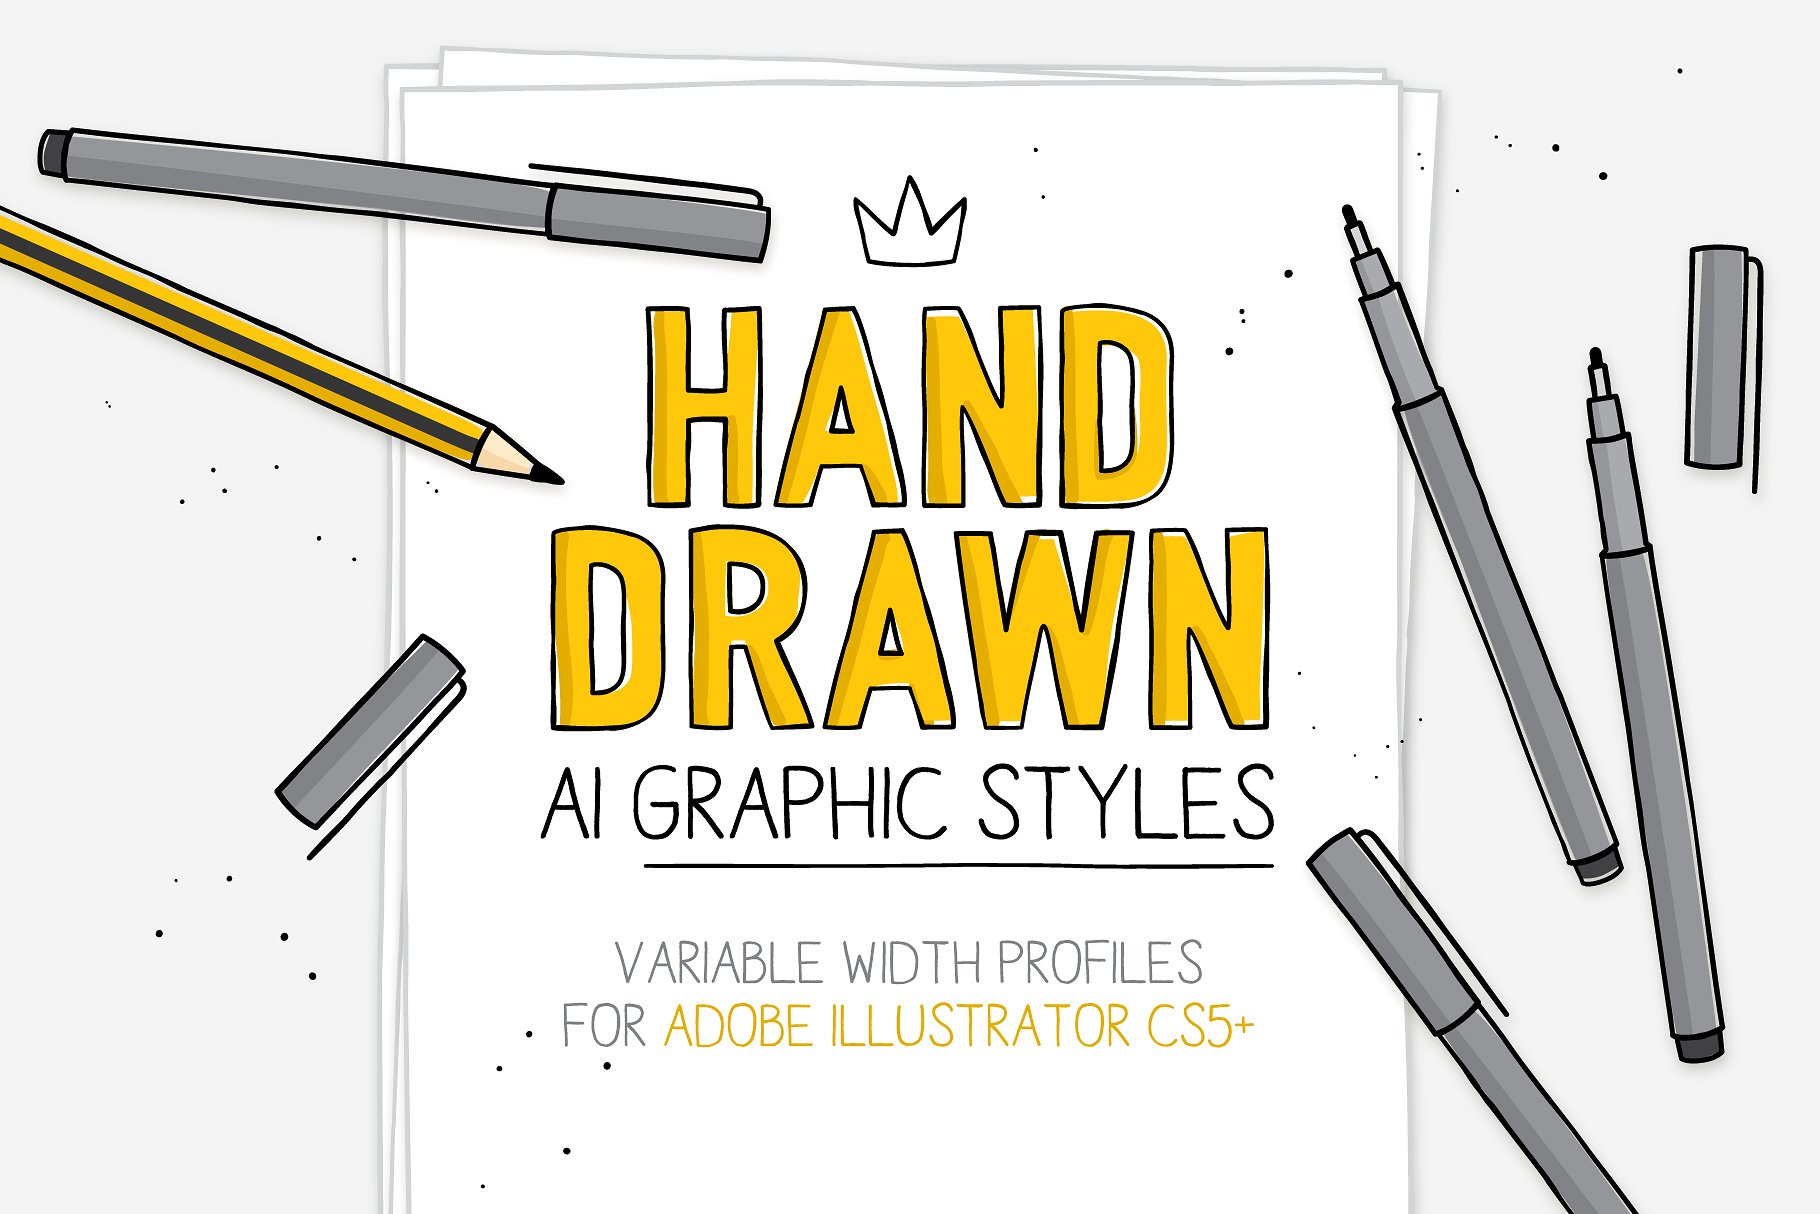 20个精心手工制作的图形风格+4个飞溅AI笔刷 Hand-drawn AI styles & brushes插图